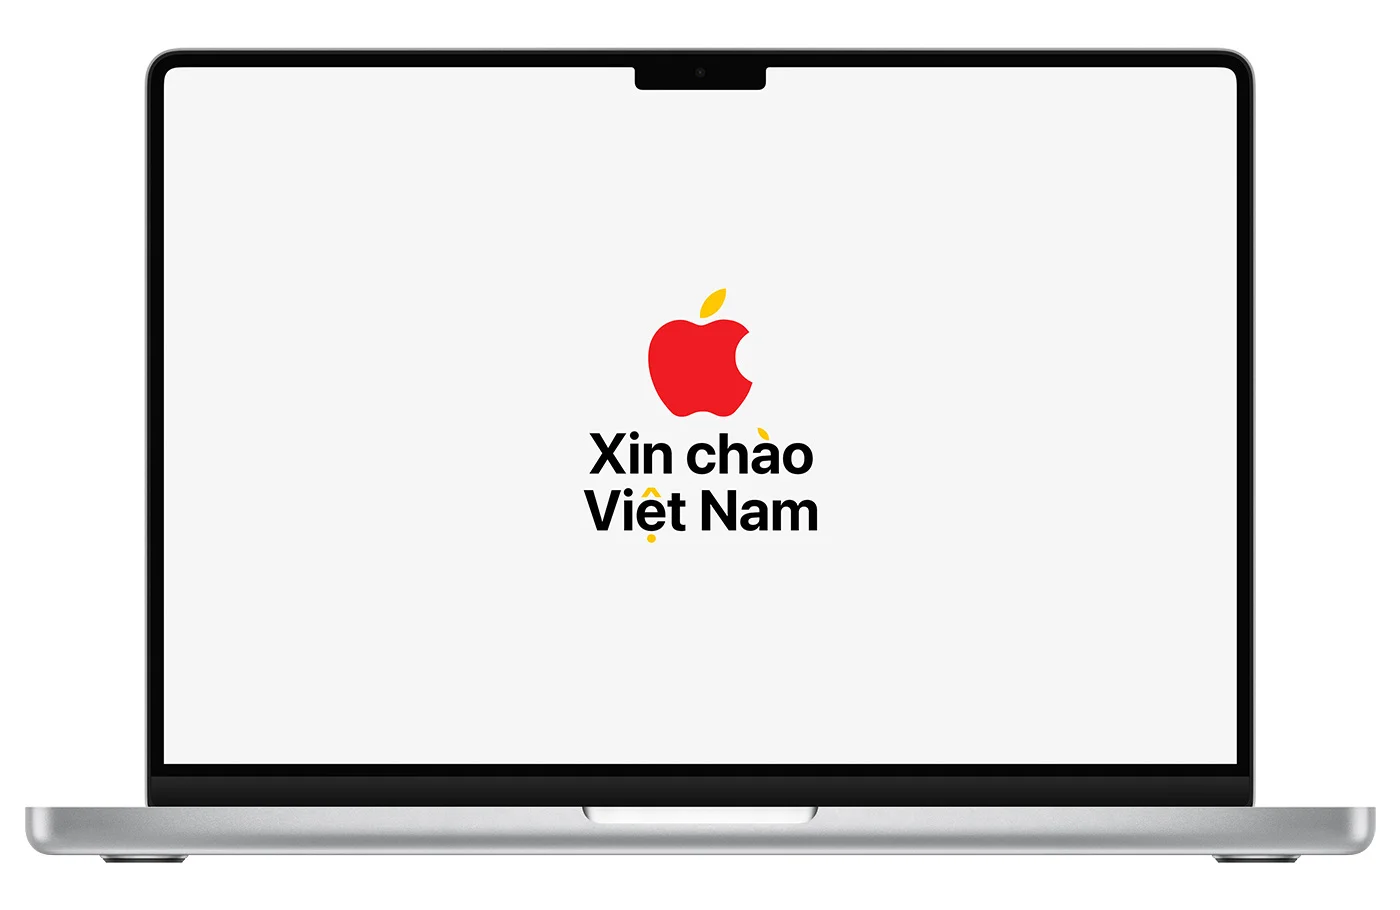 Mời tải về hình nền "Xin chào Việt Nam" của Apple Store 2